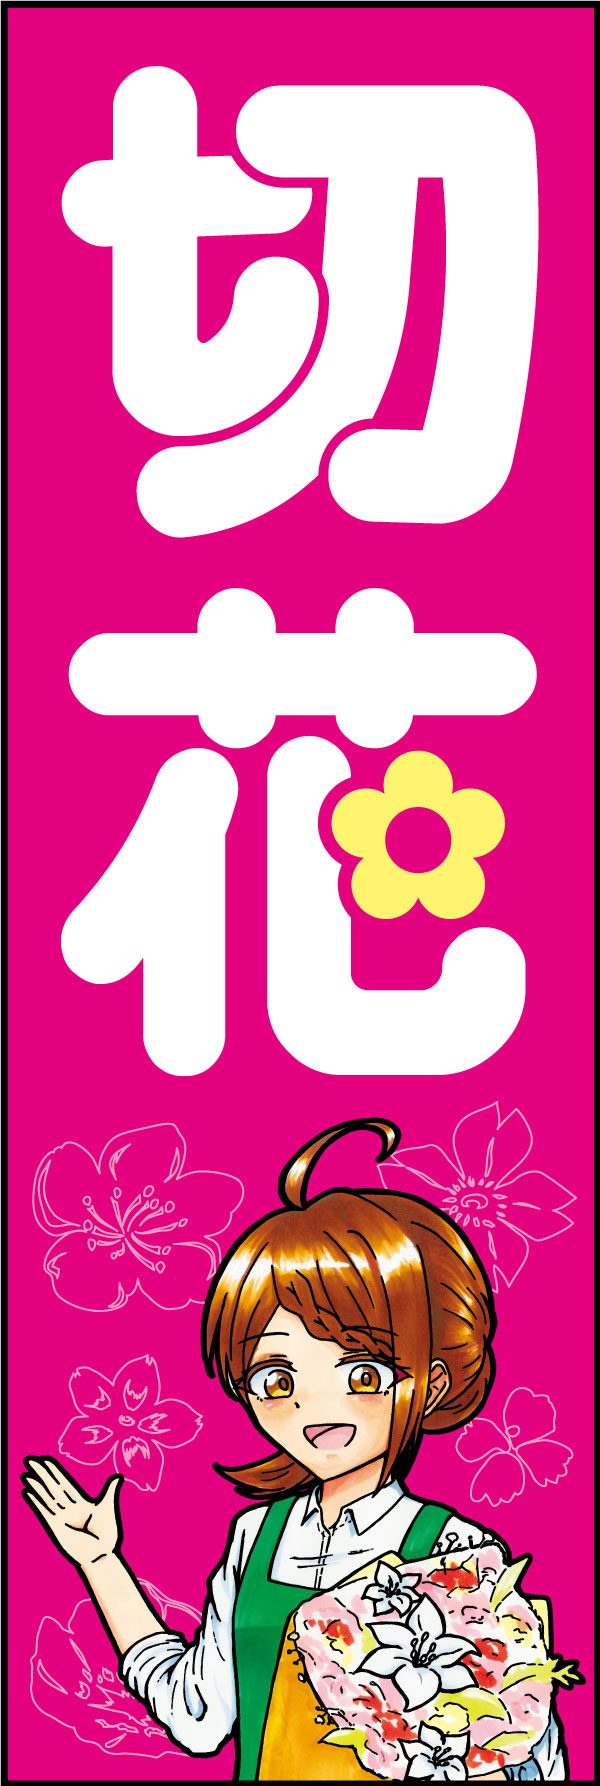 切花 162_01 「切花」のぼりです。シンボリックな「花」の文字と、親しみやすいイラストの組み合わせで店先を彩ります。（D.N）